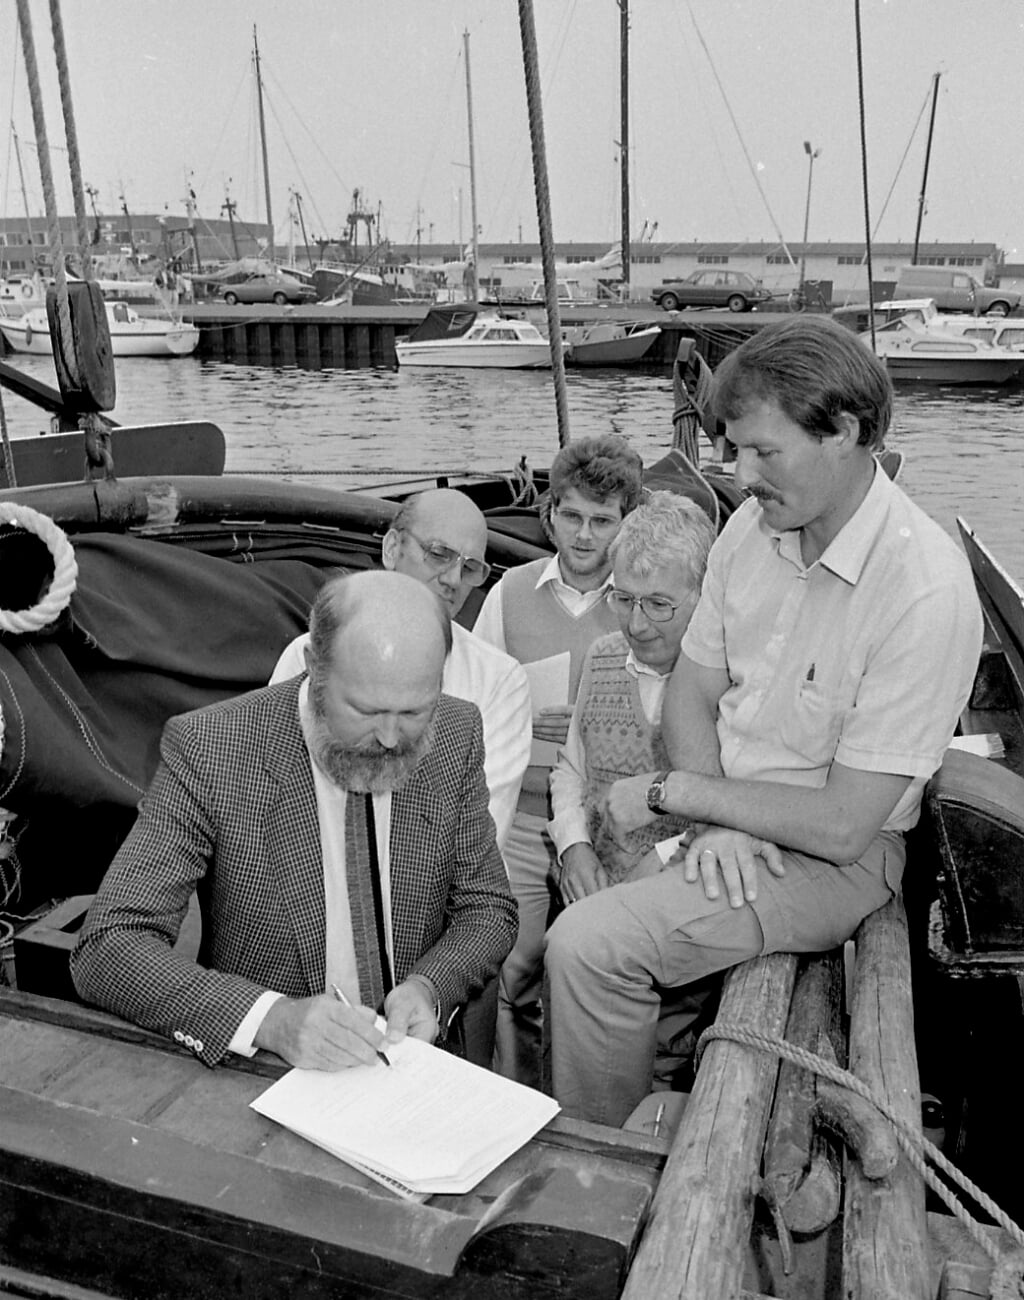 n In juni 1985 werd Kolf & Molijn de hoofdsponsor van Orca's. Op de foto zien we directeur Jean de Heus het contract tekenen, achter hem staat boekhouder Kok, die toch wel wat benauwd kijkt en verder Cor Roskam, Joop van Eck en Klaas Mars.